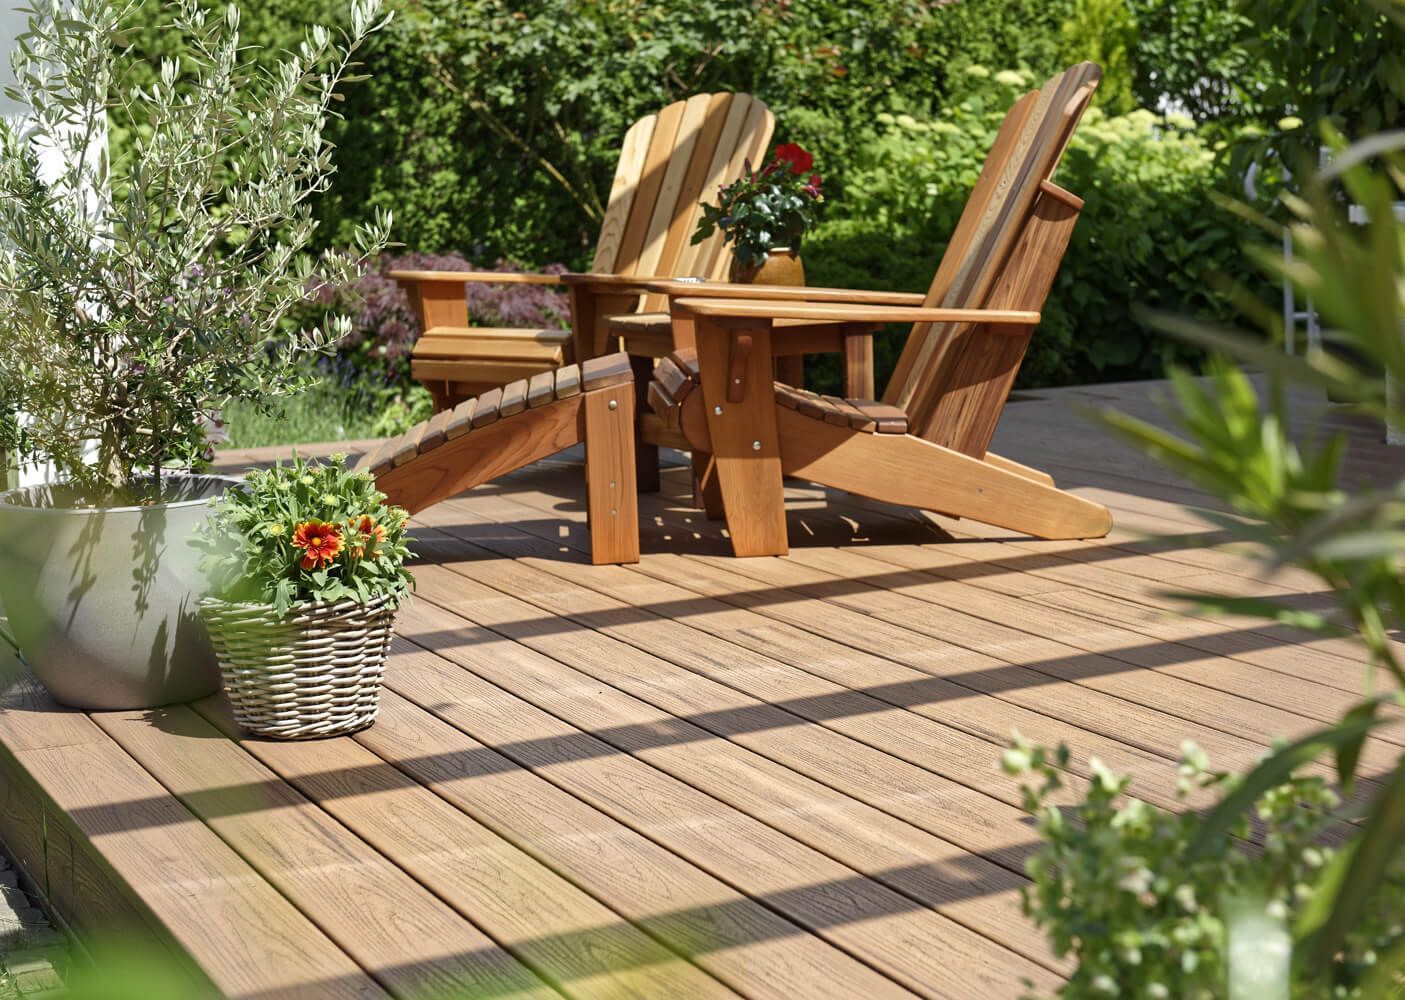 Urige unüberdachte Terrasse im Garten mit Holzstühlen und Pflanzen.